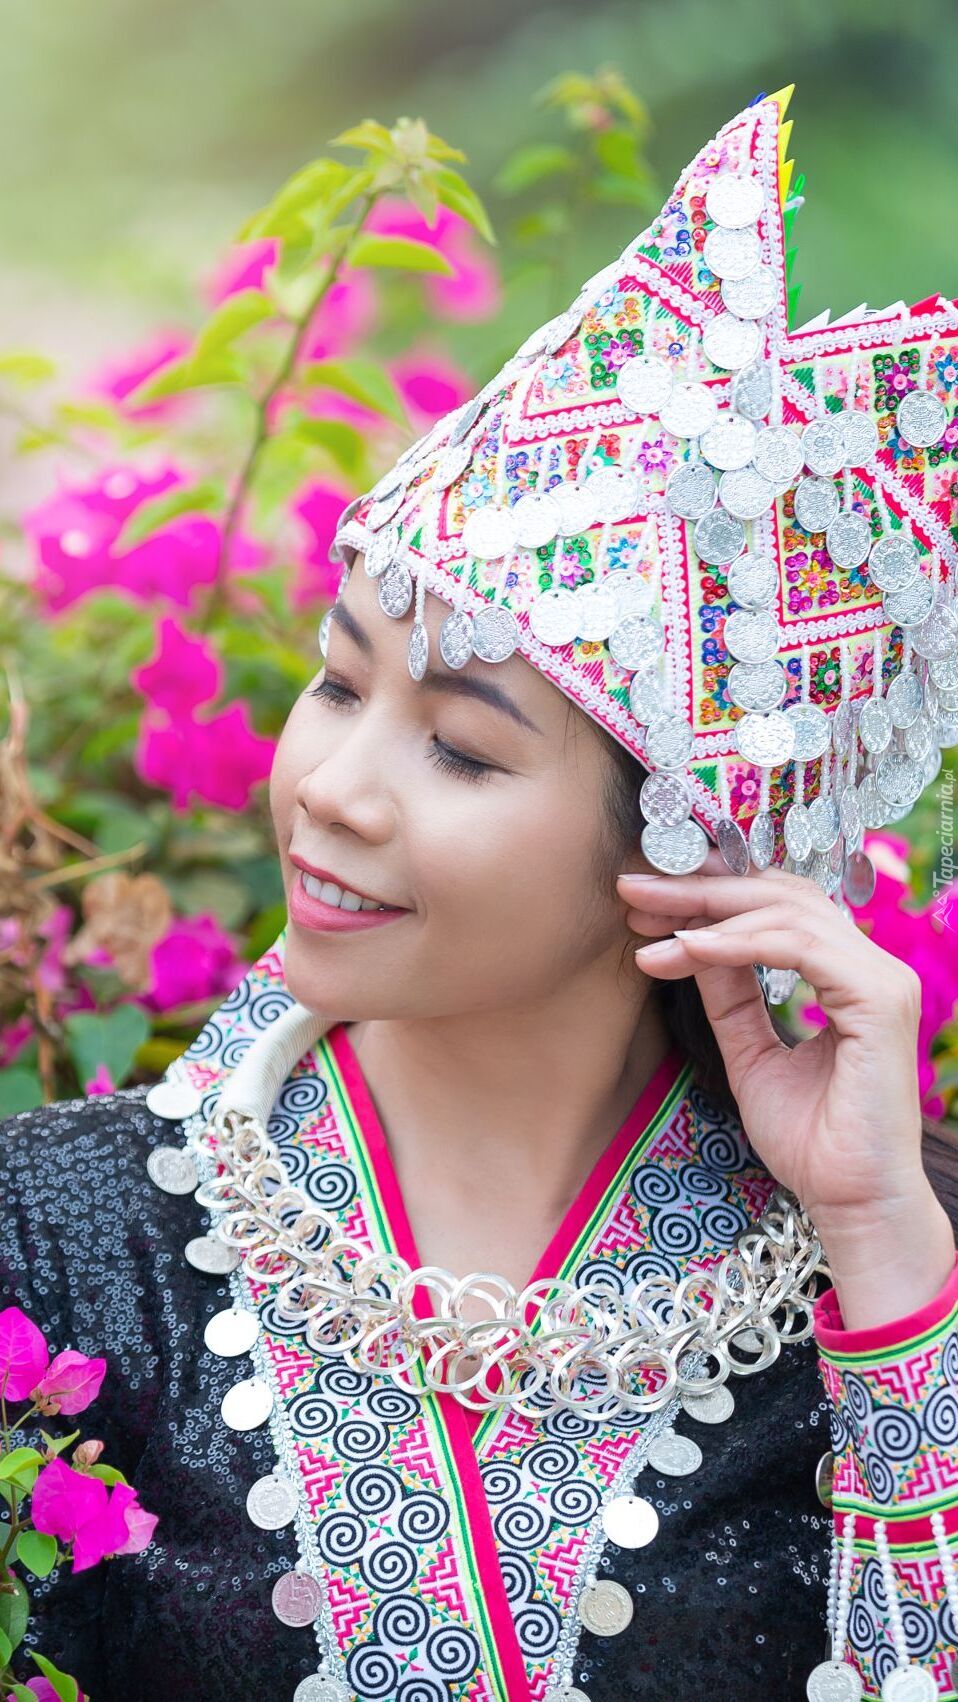 Azjatka w tradycyjnym stroju